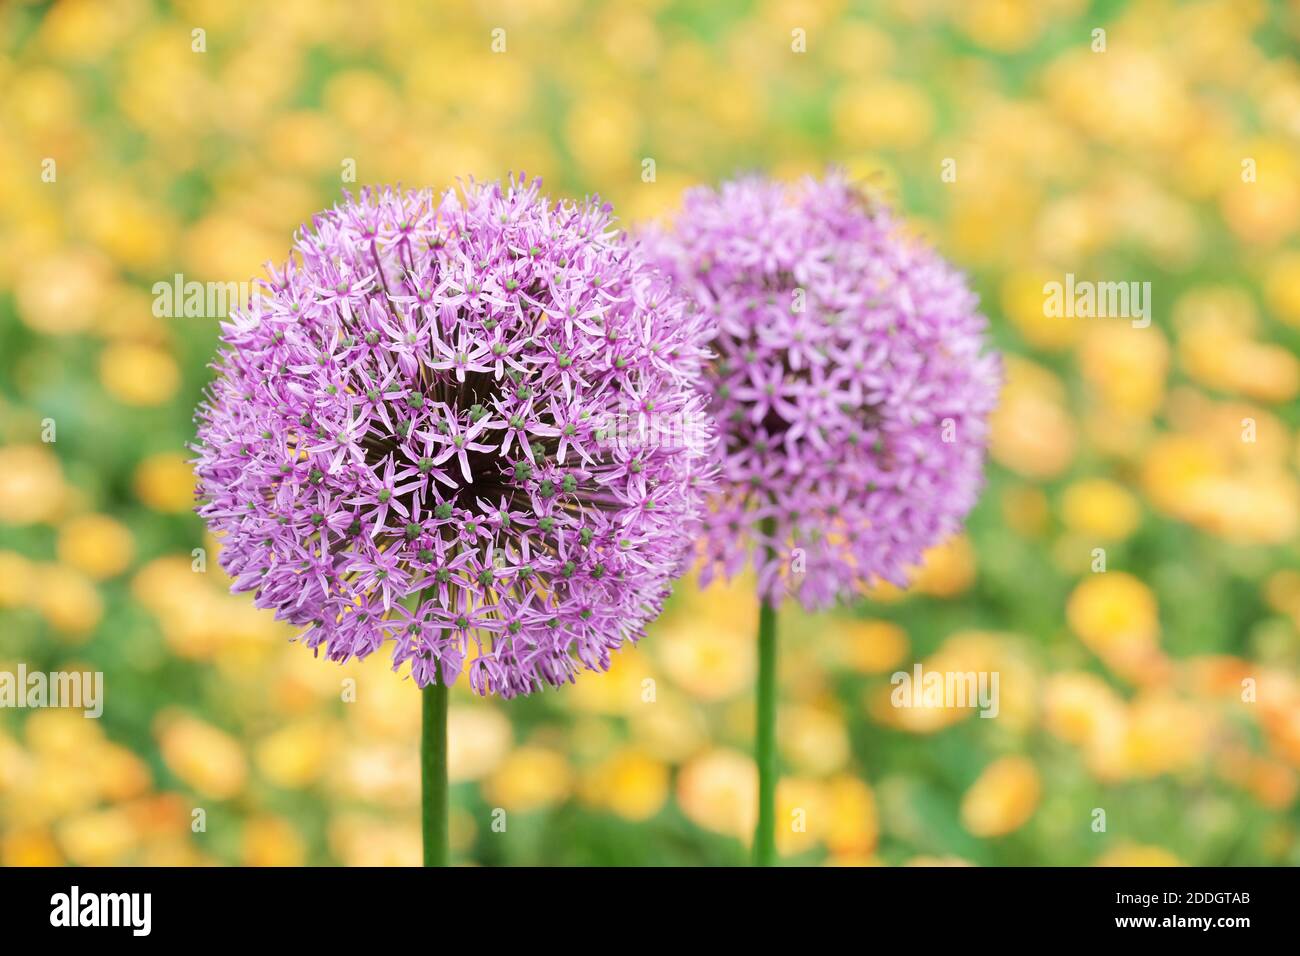 Allium senescens subsp. montanum Stock Photo